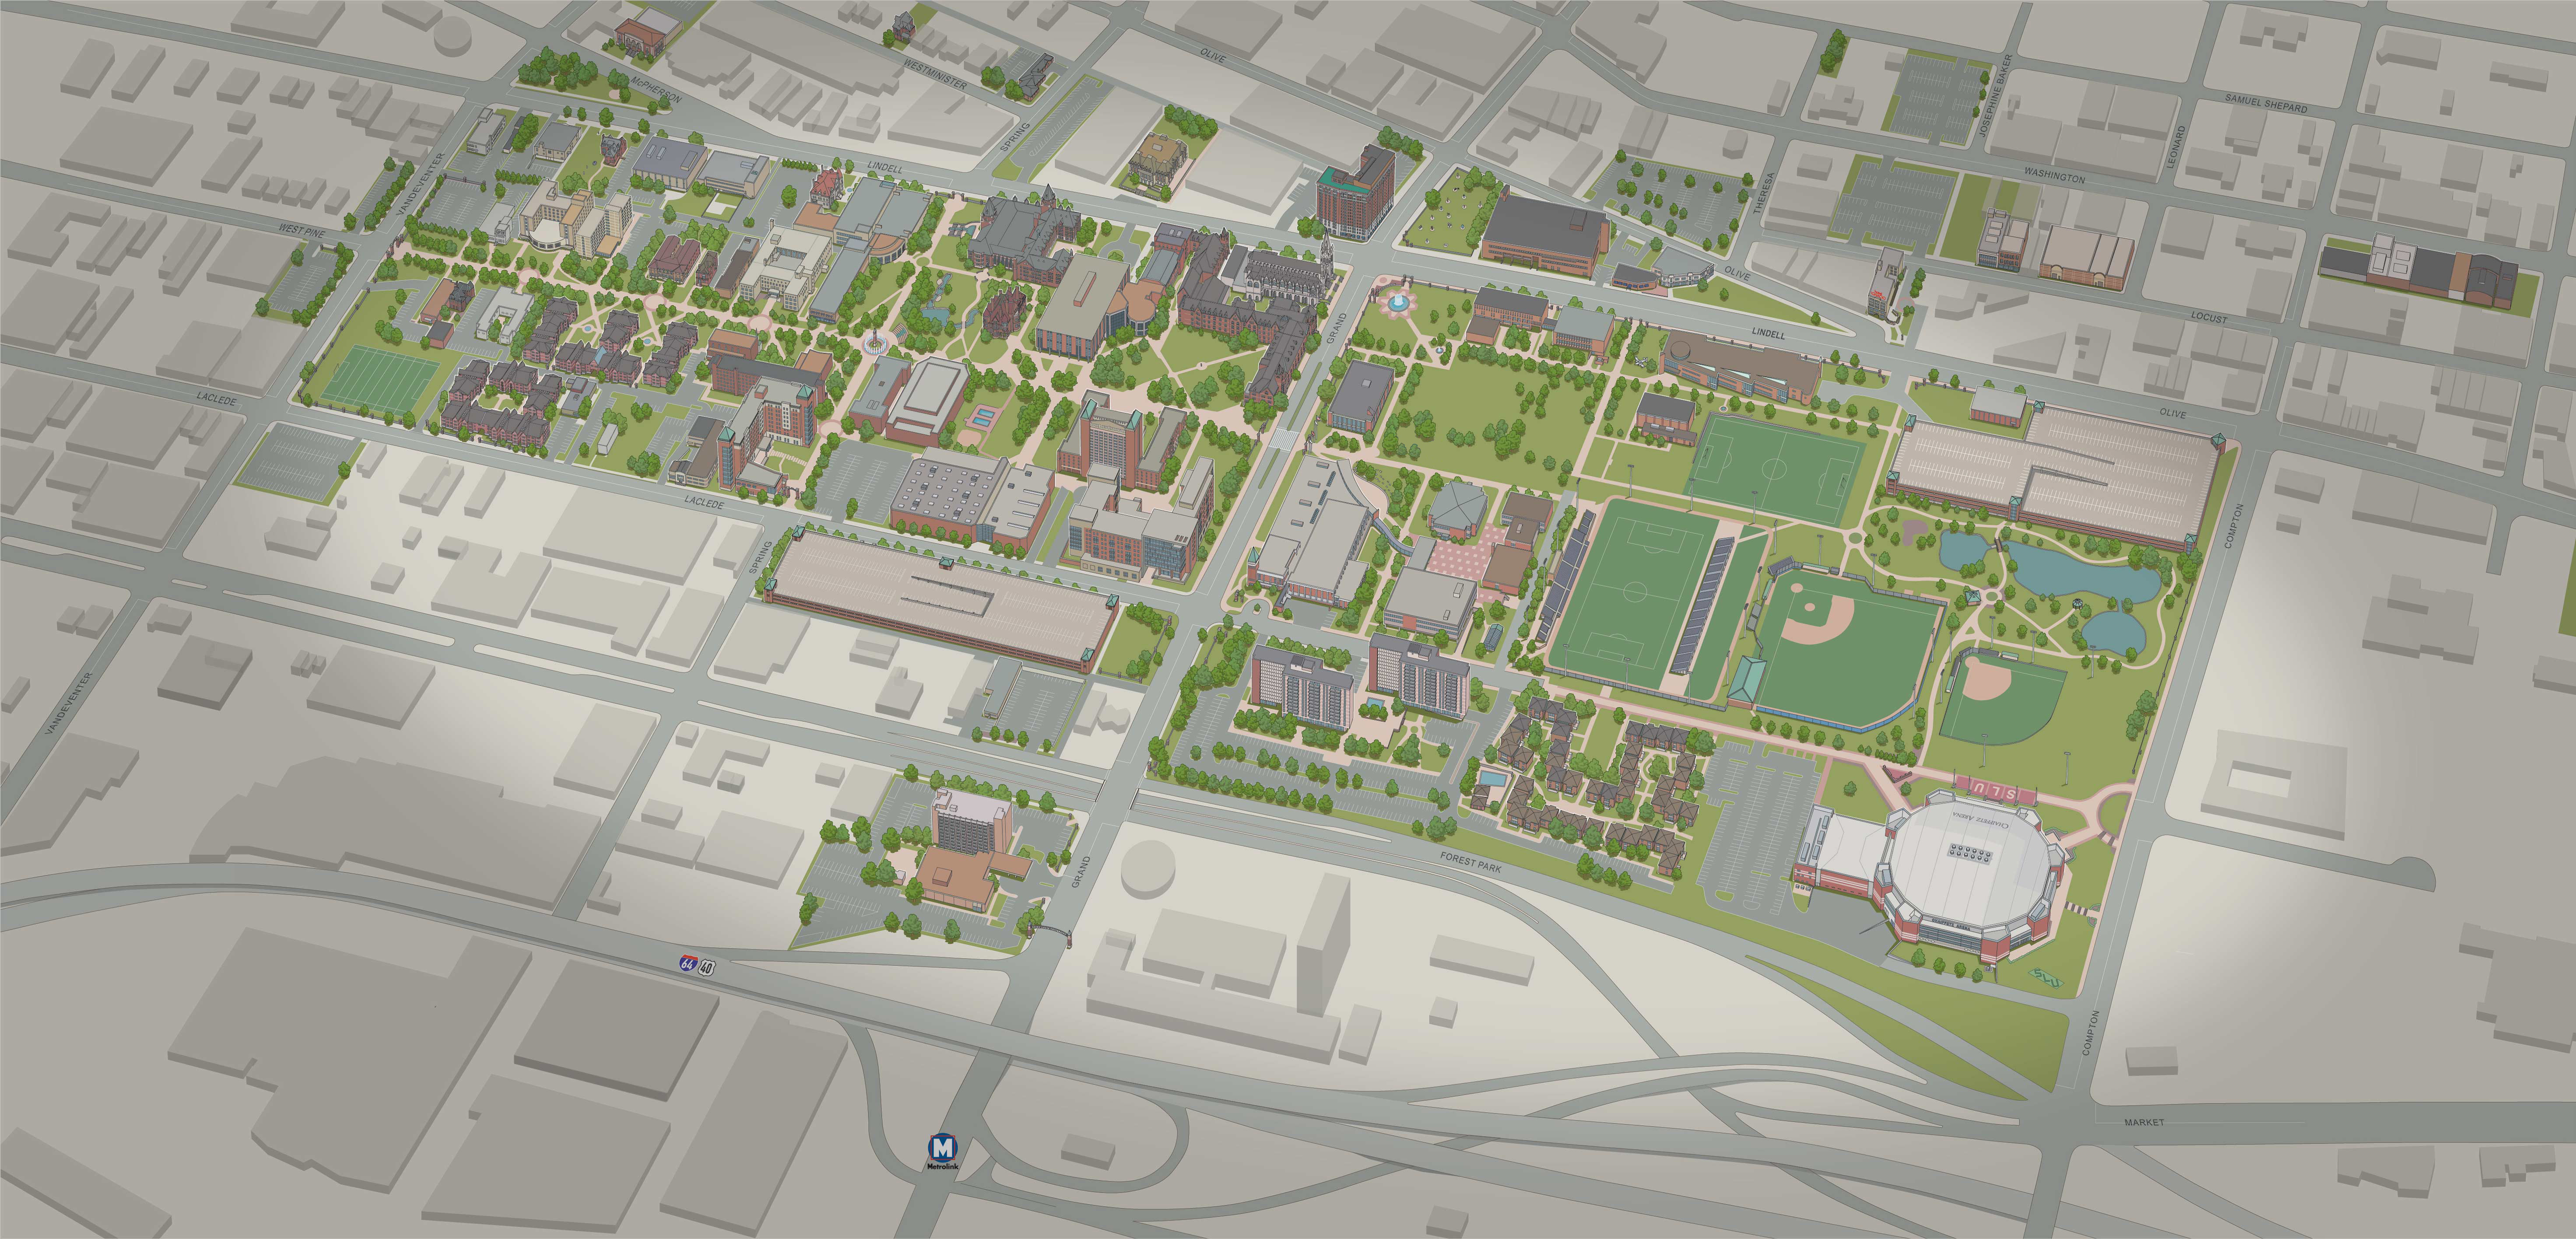 Map Of Slu Campus Saint Louis University Campus Map